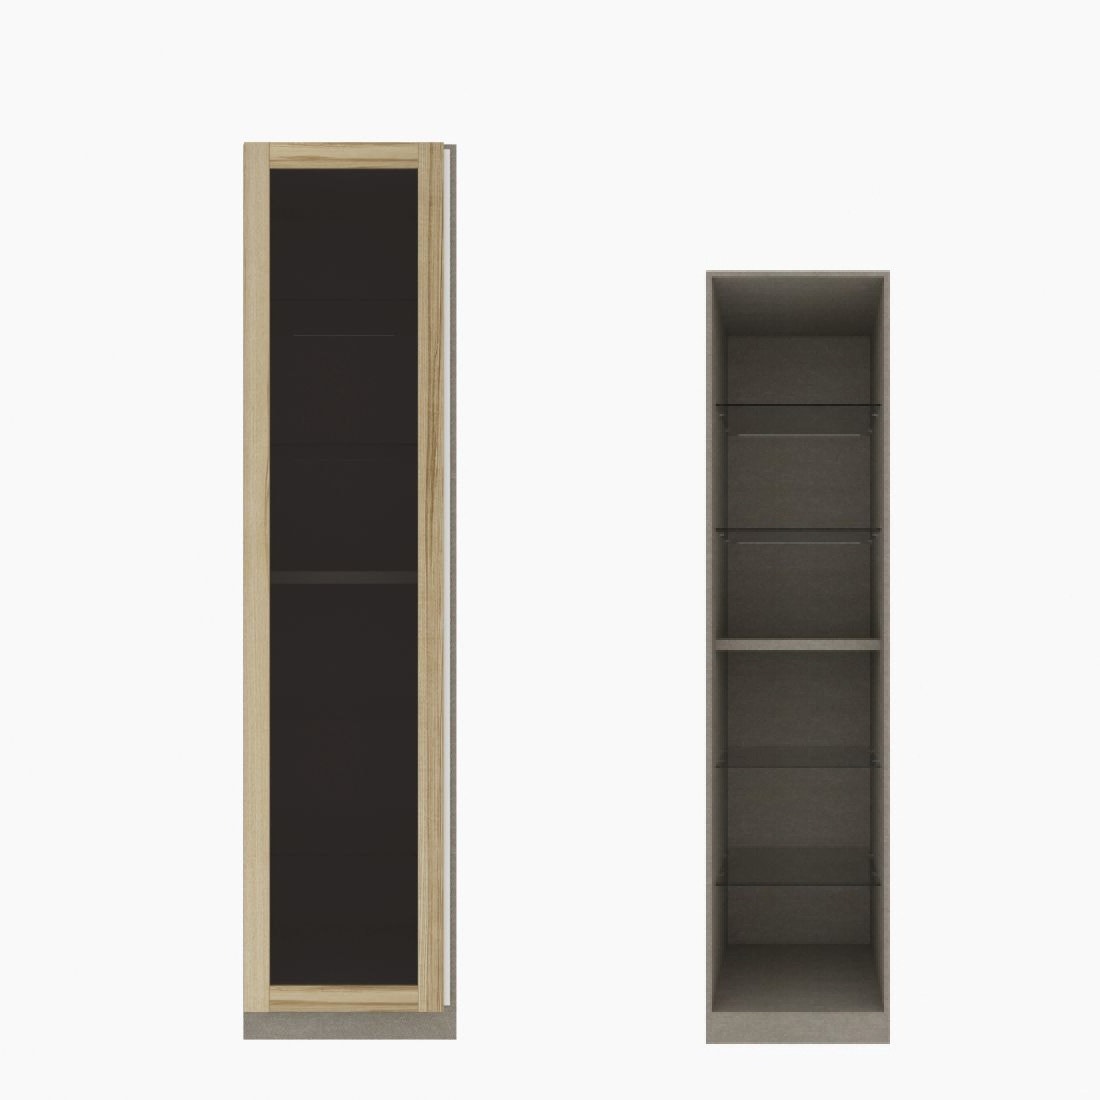 ตู้เสื้อผ้า ตู้โชว์ชั้นกระจก OP-H (หน้าบานเปิดซ้าย) ขนาด 50 ซม. รุ่น Blox สีไม้อ่อน&กระจกชาดำ01